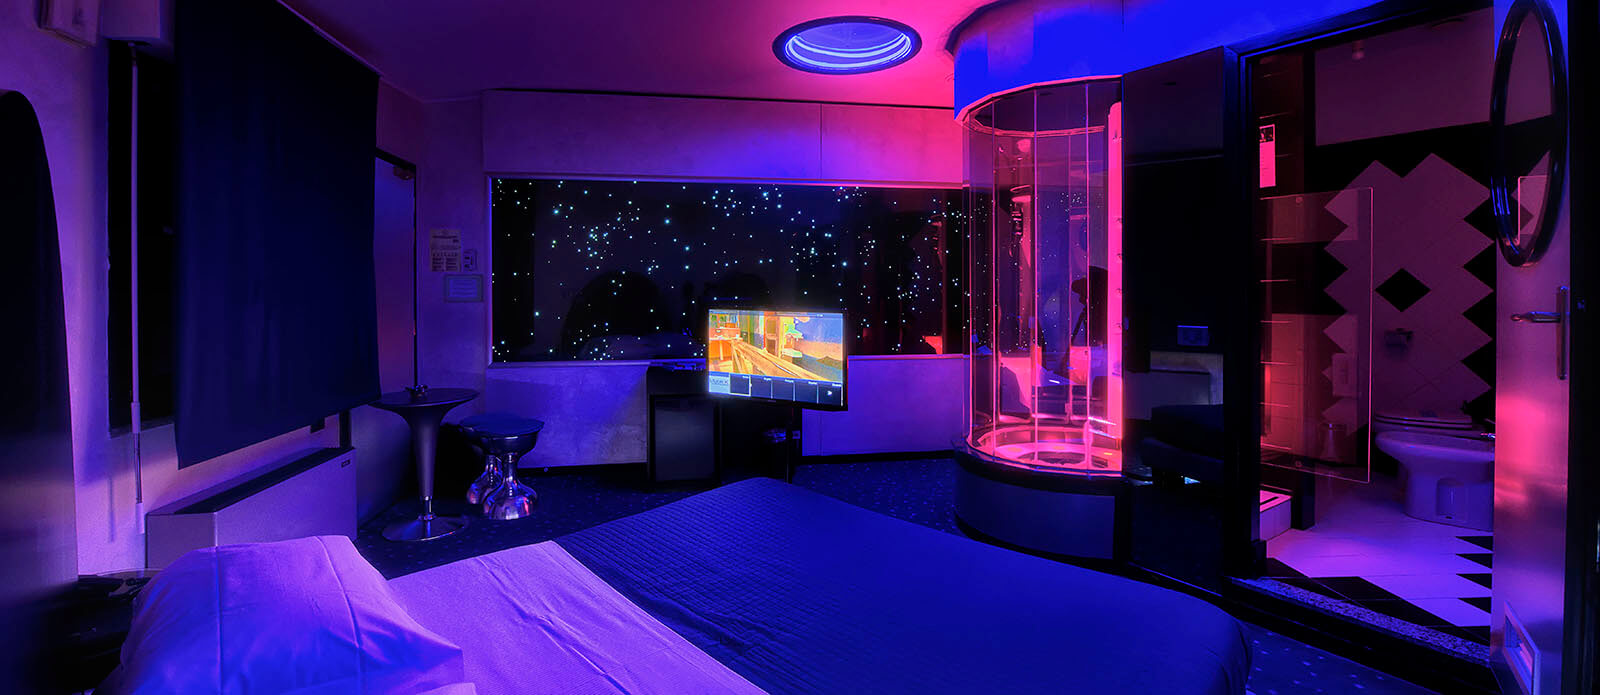 Motel K Junior Suite Planetaria vista su letto matrimoniale con doccia idromassaggio a vista davanti al letto camera a tema fantascientifico